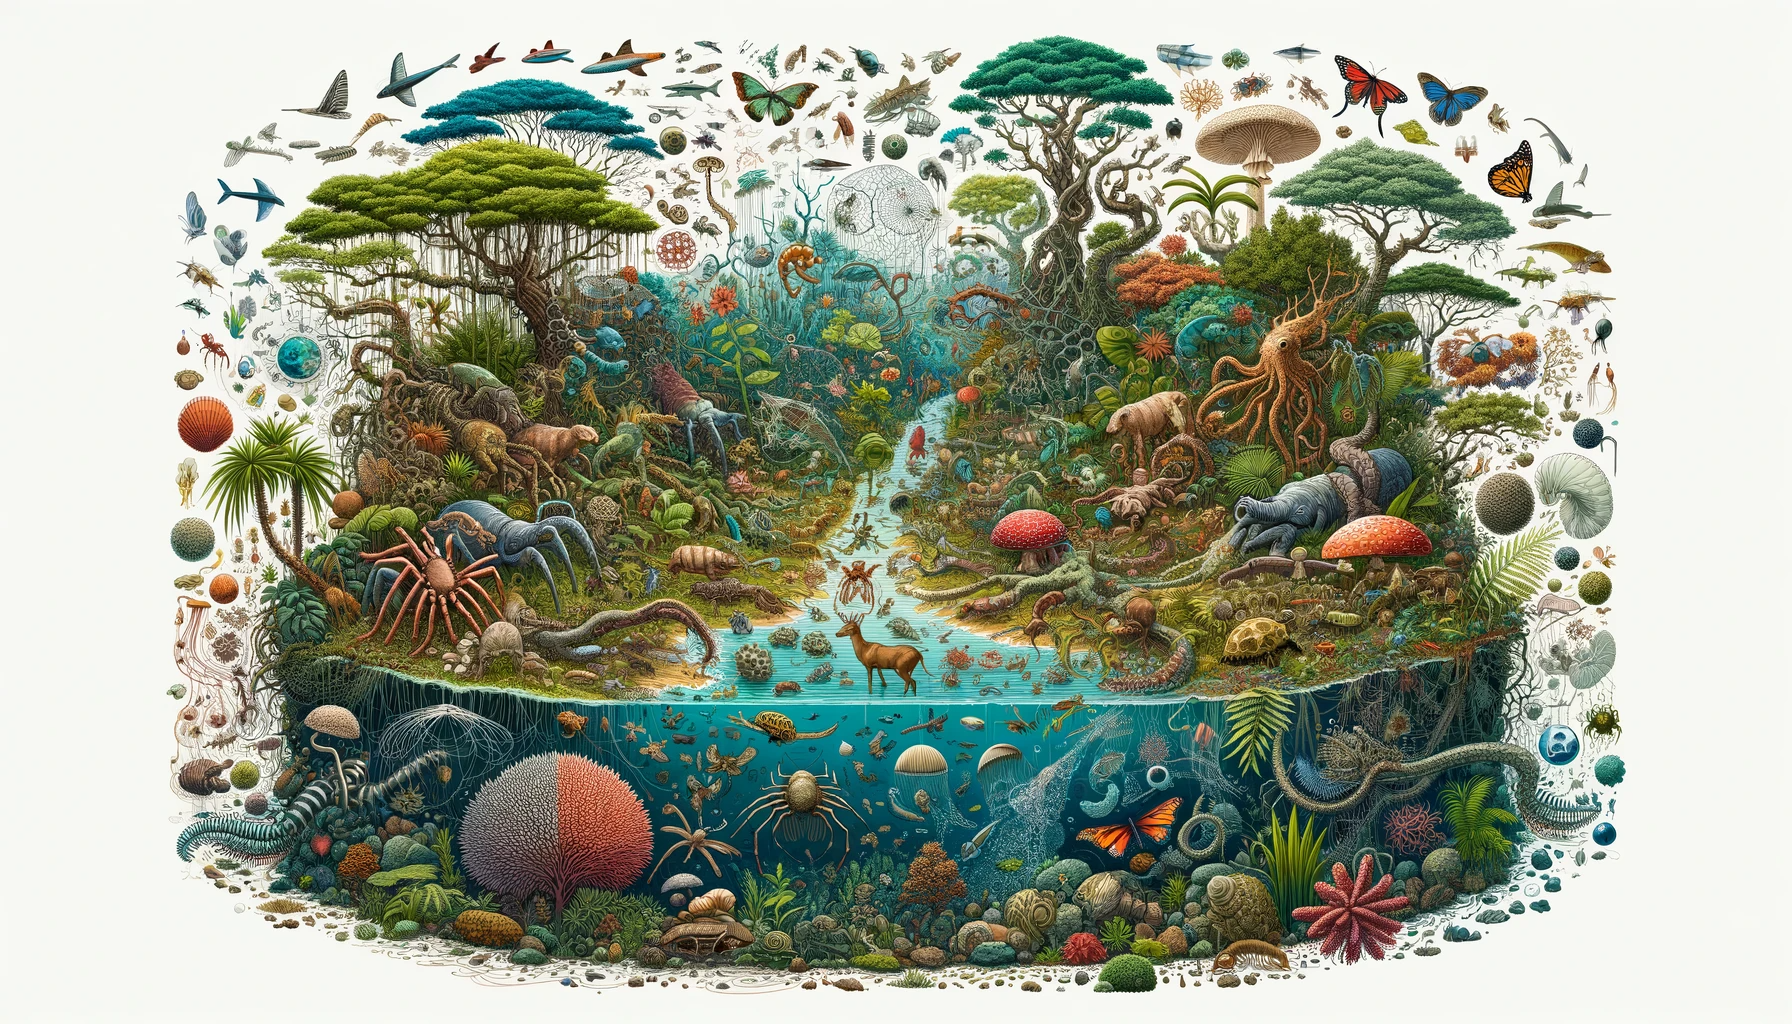 Imagen con componenetes del ecosistema